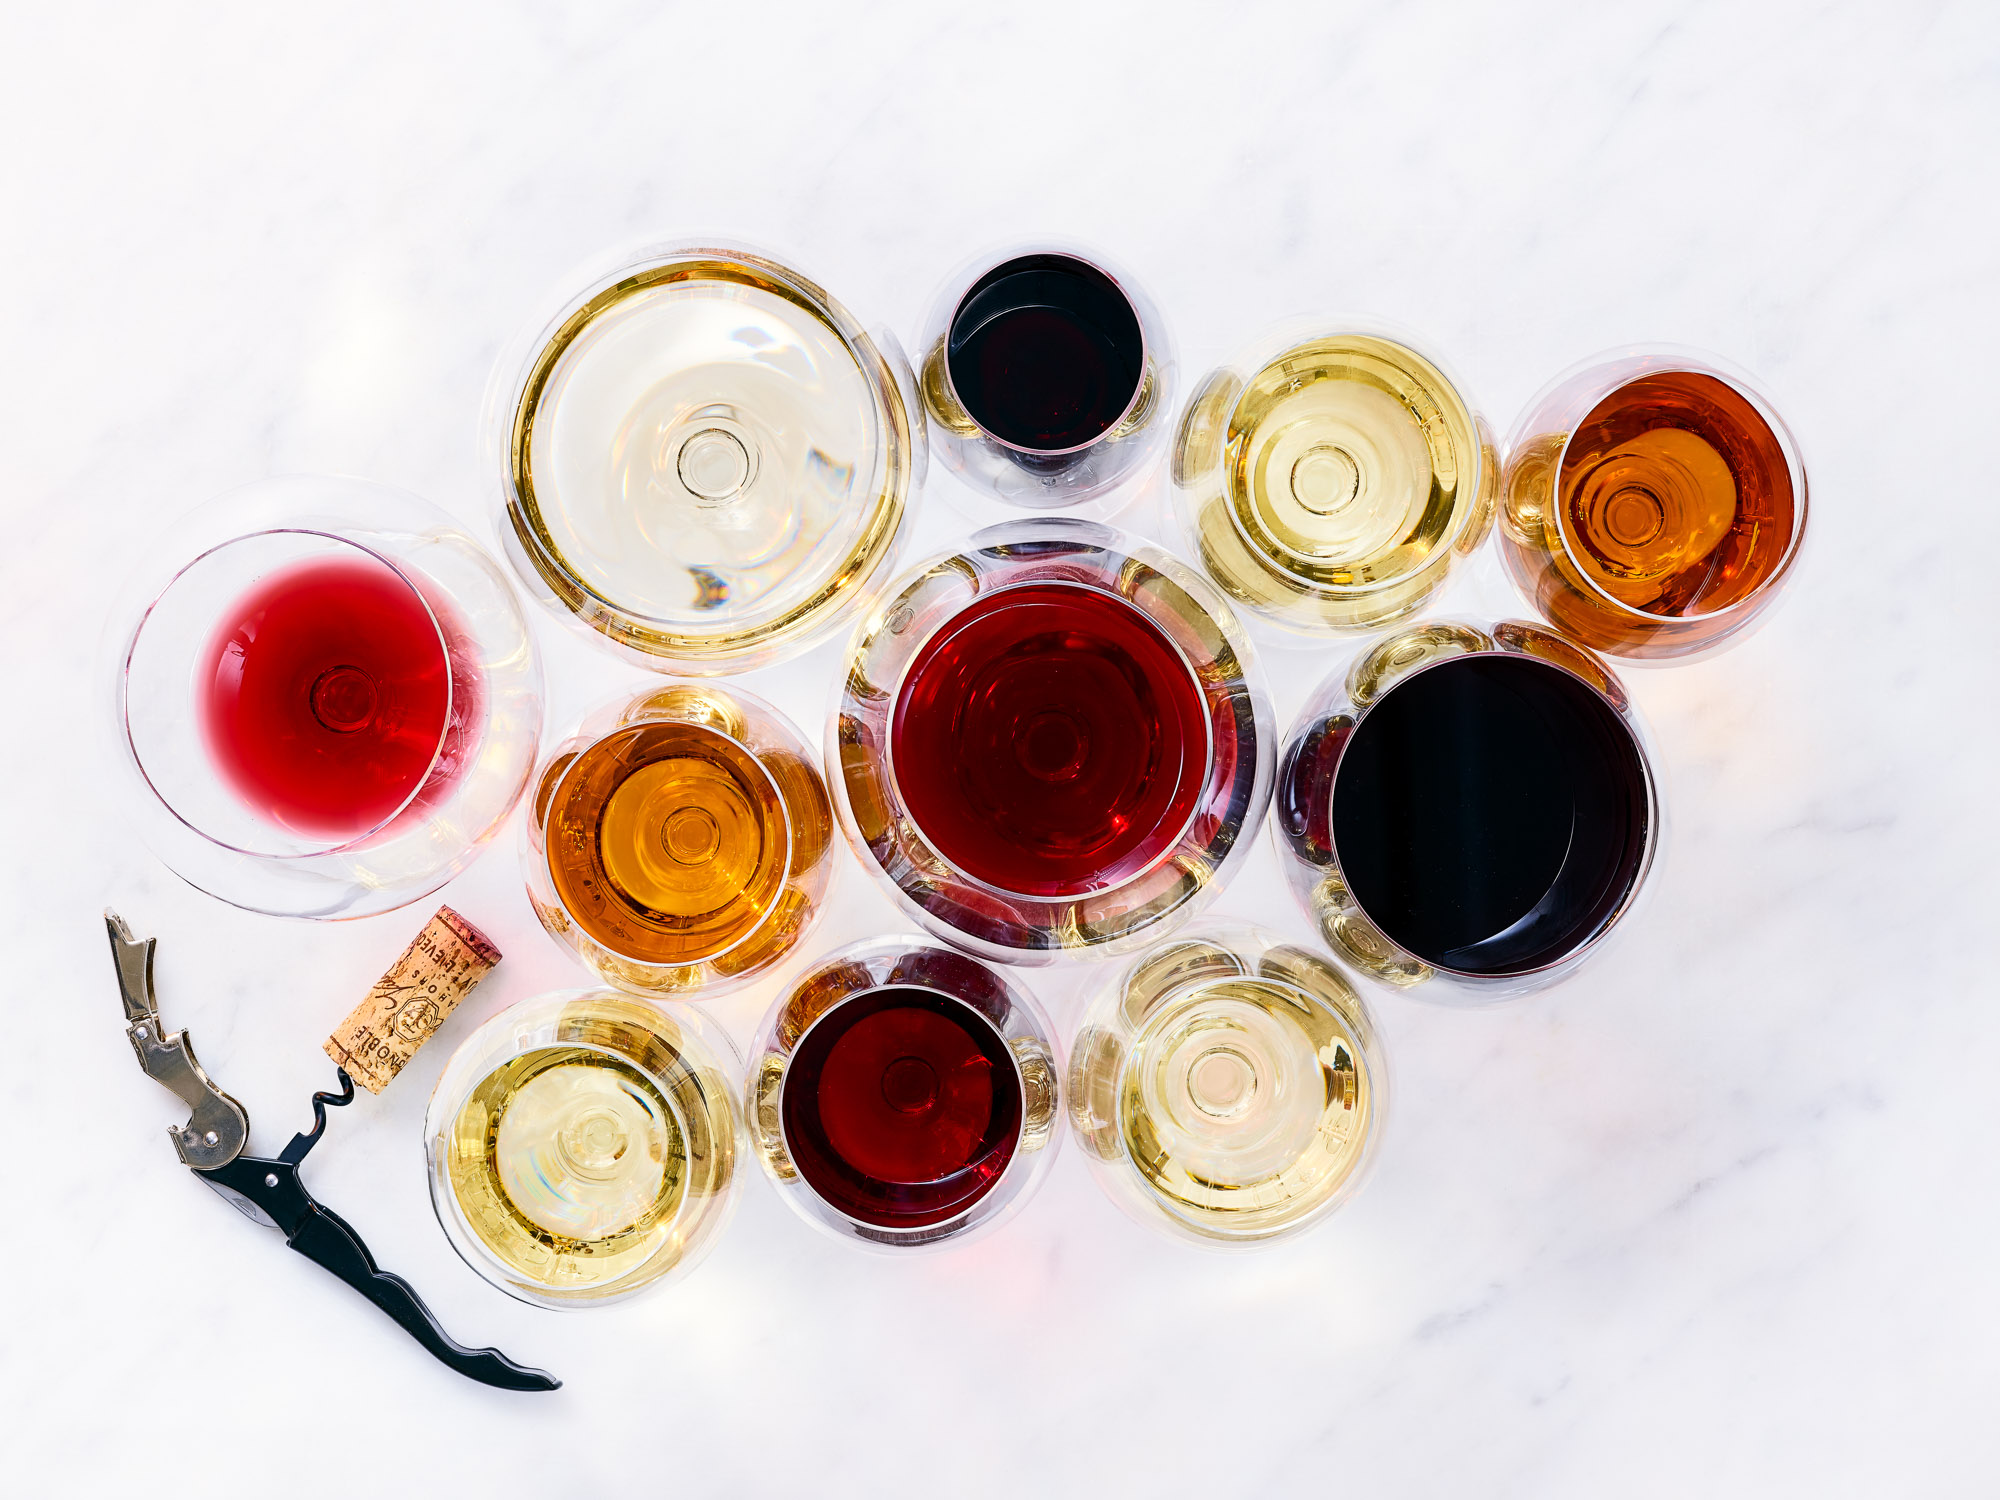 Bild tagen uppifrån på massvis av vinglas fyllda med vitt och rött vin